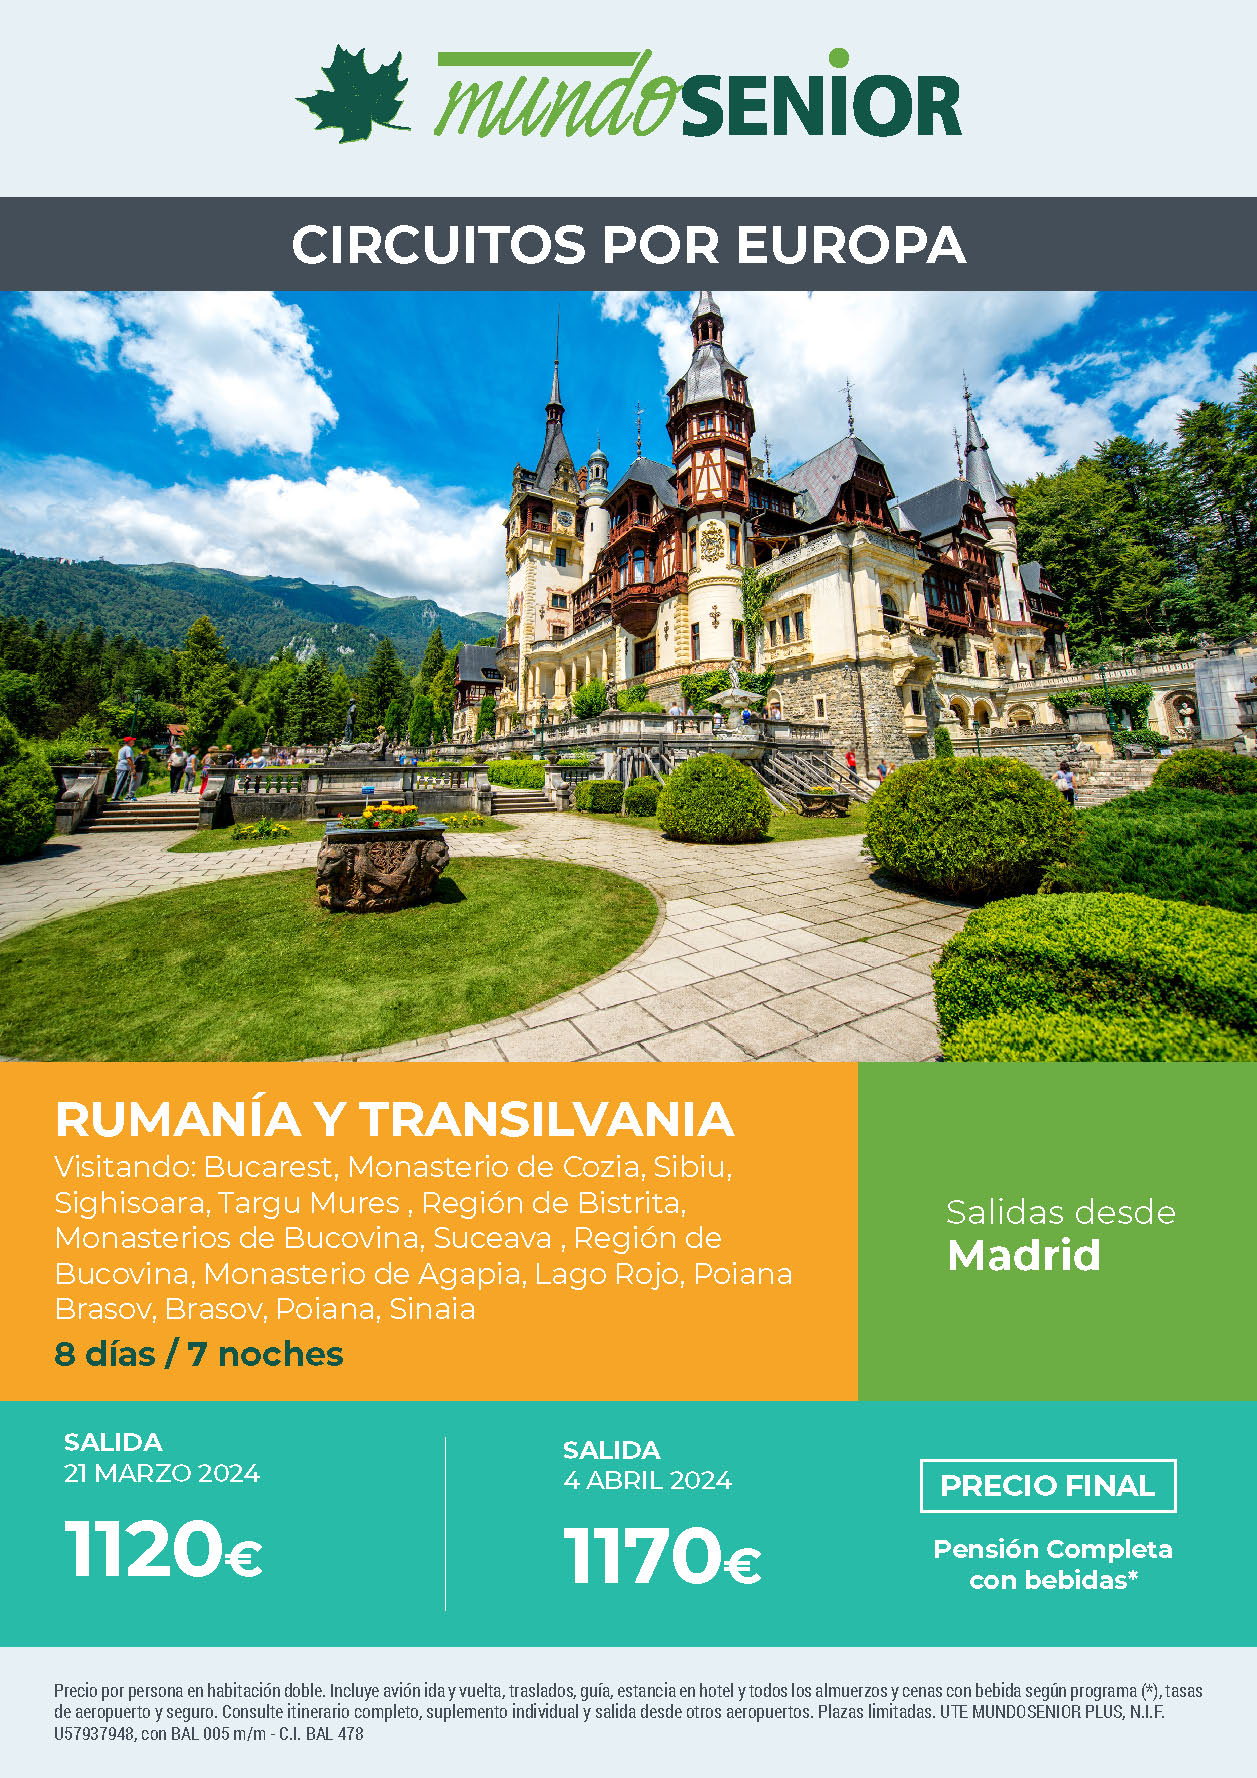 Oferta Mundo Senior circuito Rumania y Transilvania Pension Completa 8 dias salidas marzo y abril 2024 en vuelo directo desde Madrid